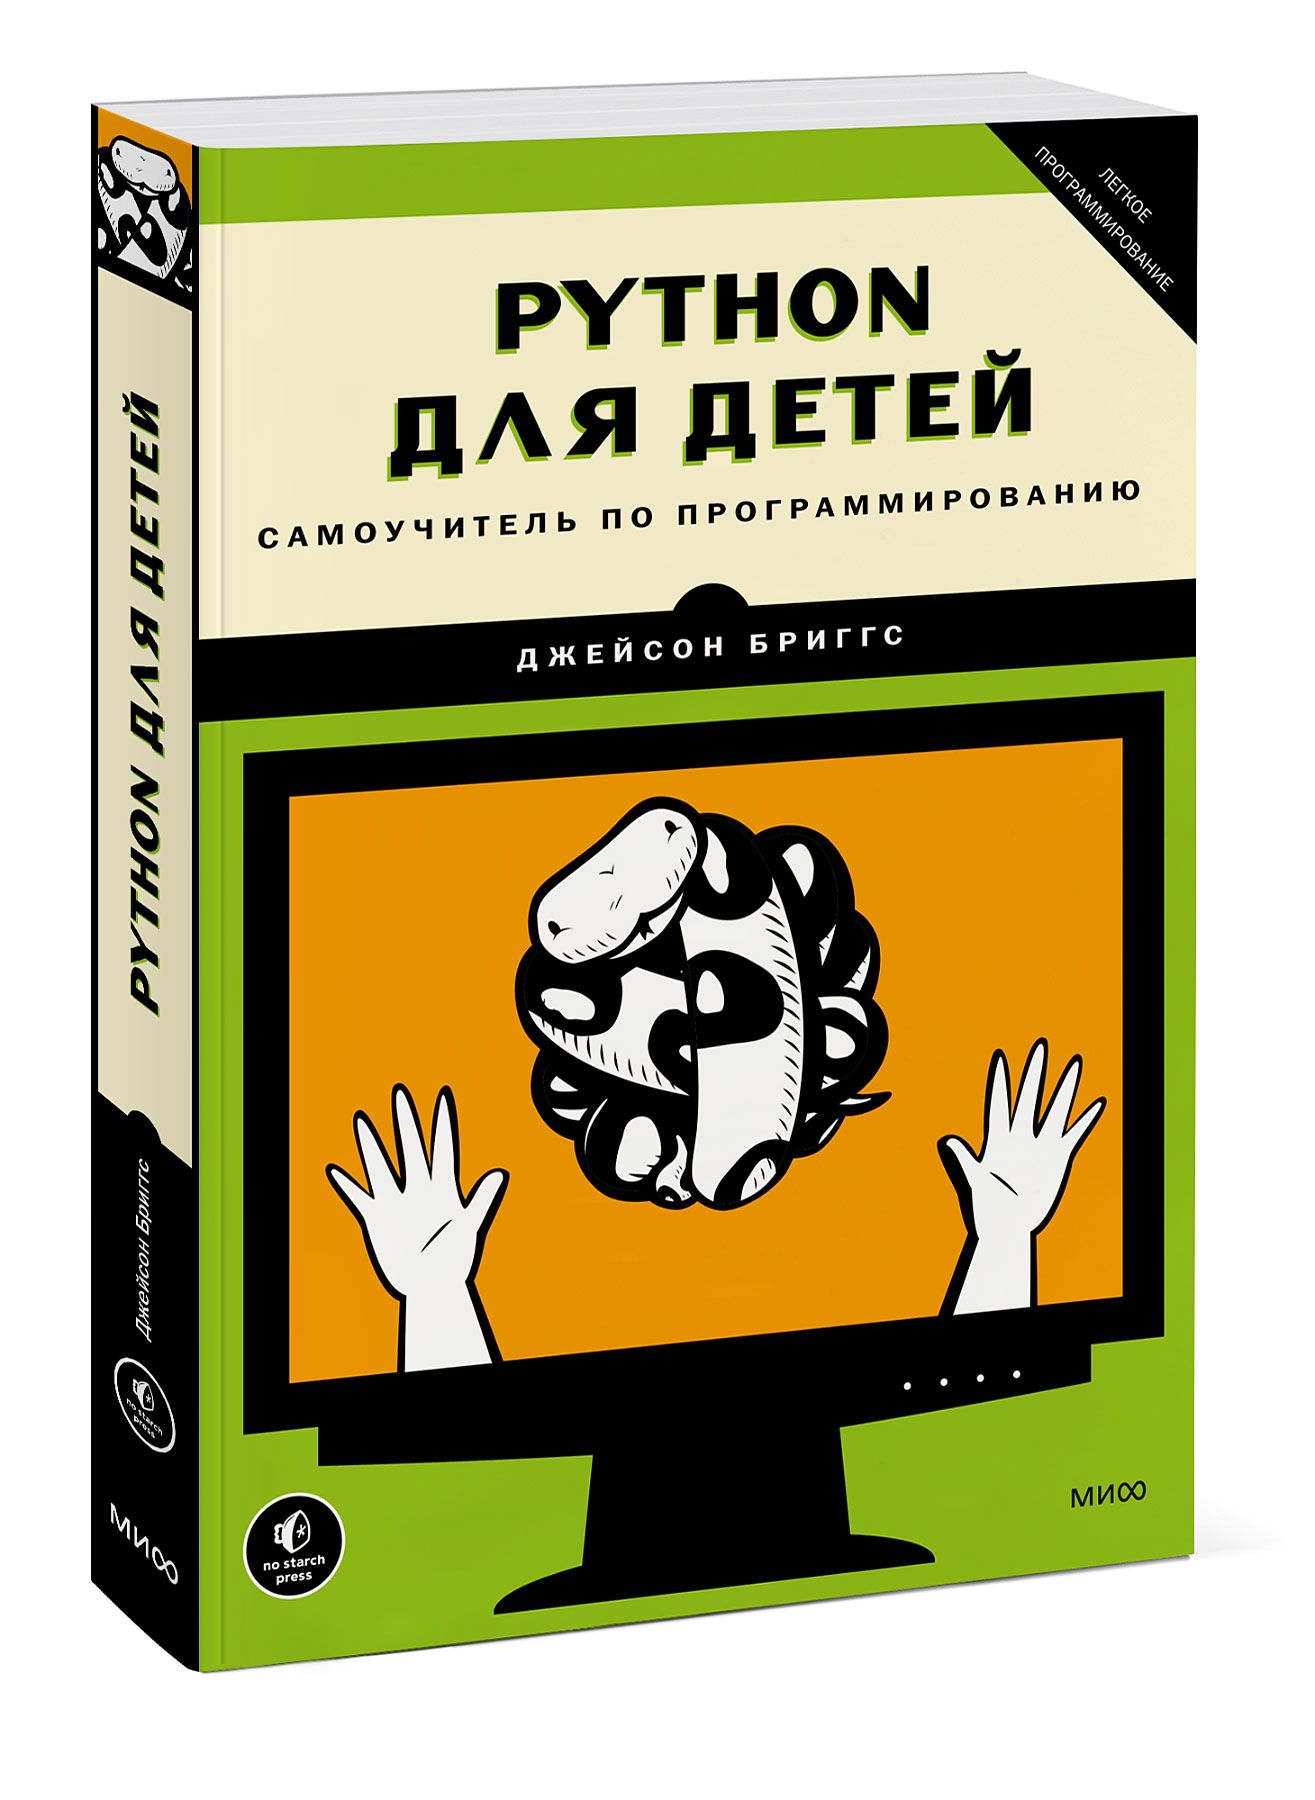 Книги про программирование. Python для детей. Самоучитель по программированию книга. Программирование для детей Python книга. Програмирование Phyton для детей самоучитель. Python для детей самоучитель по программированию.